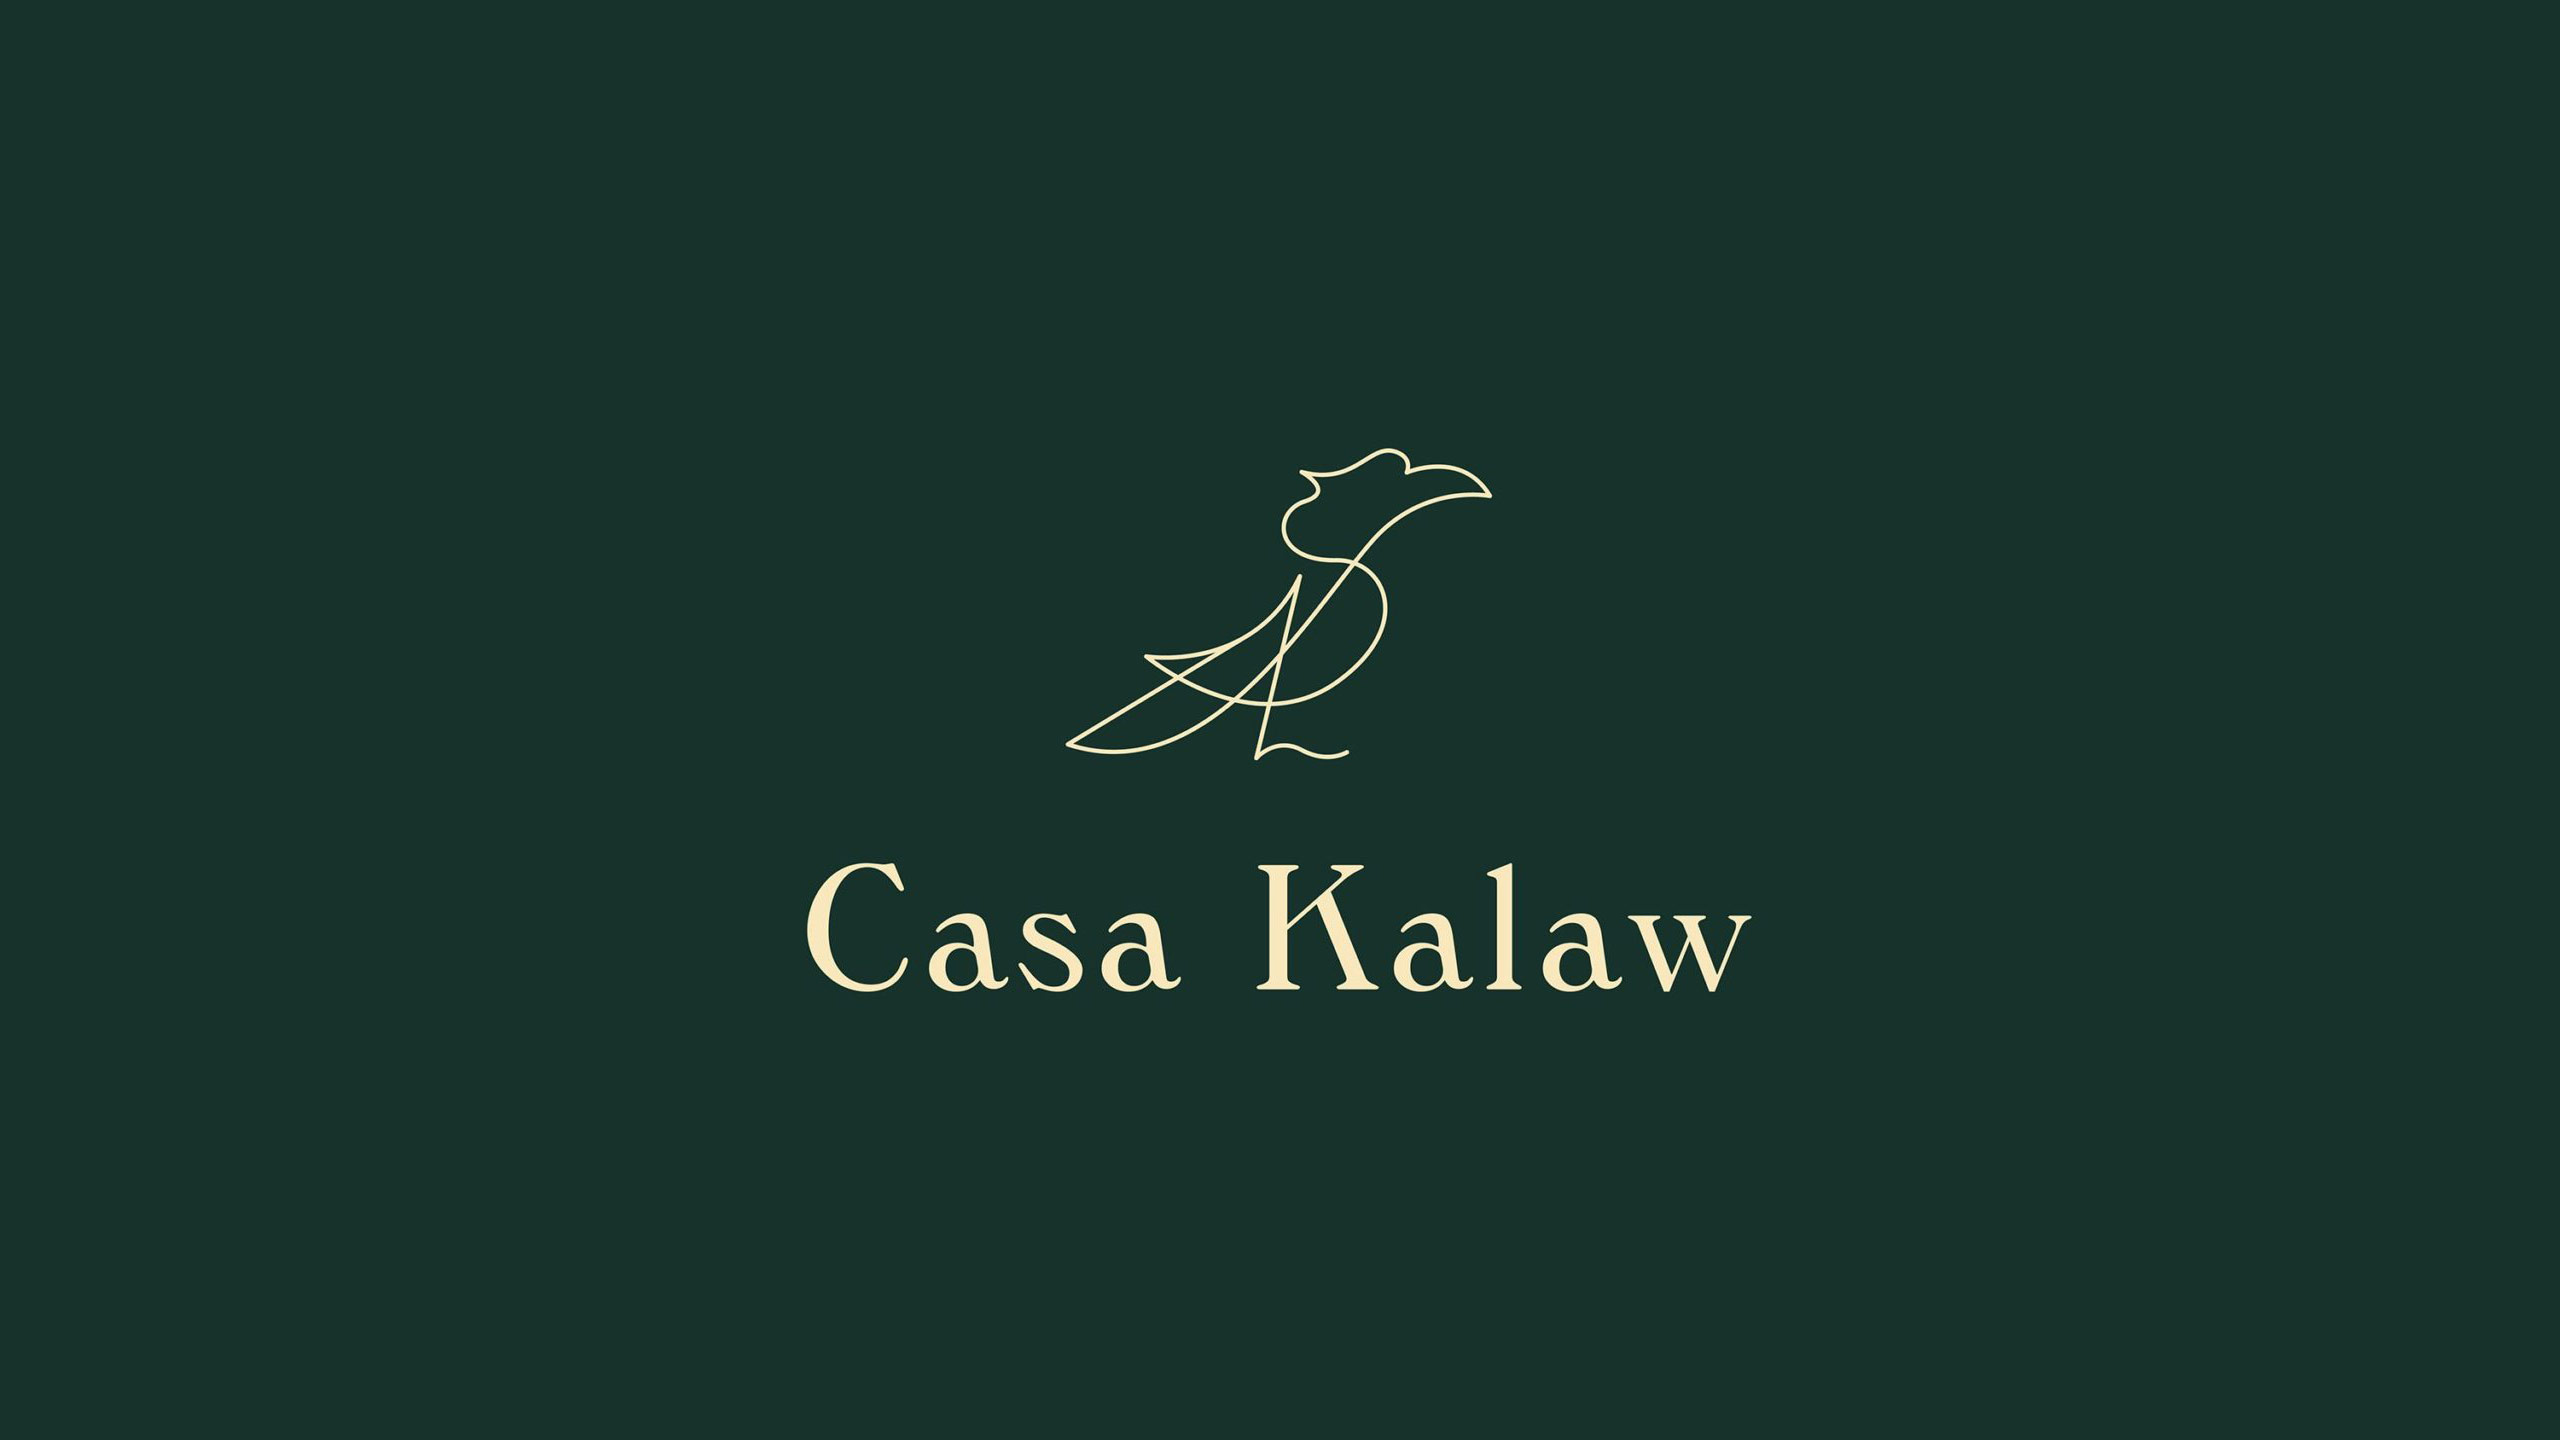 Kalaw-thumb